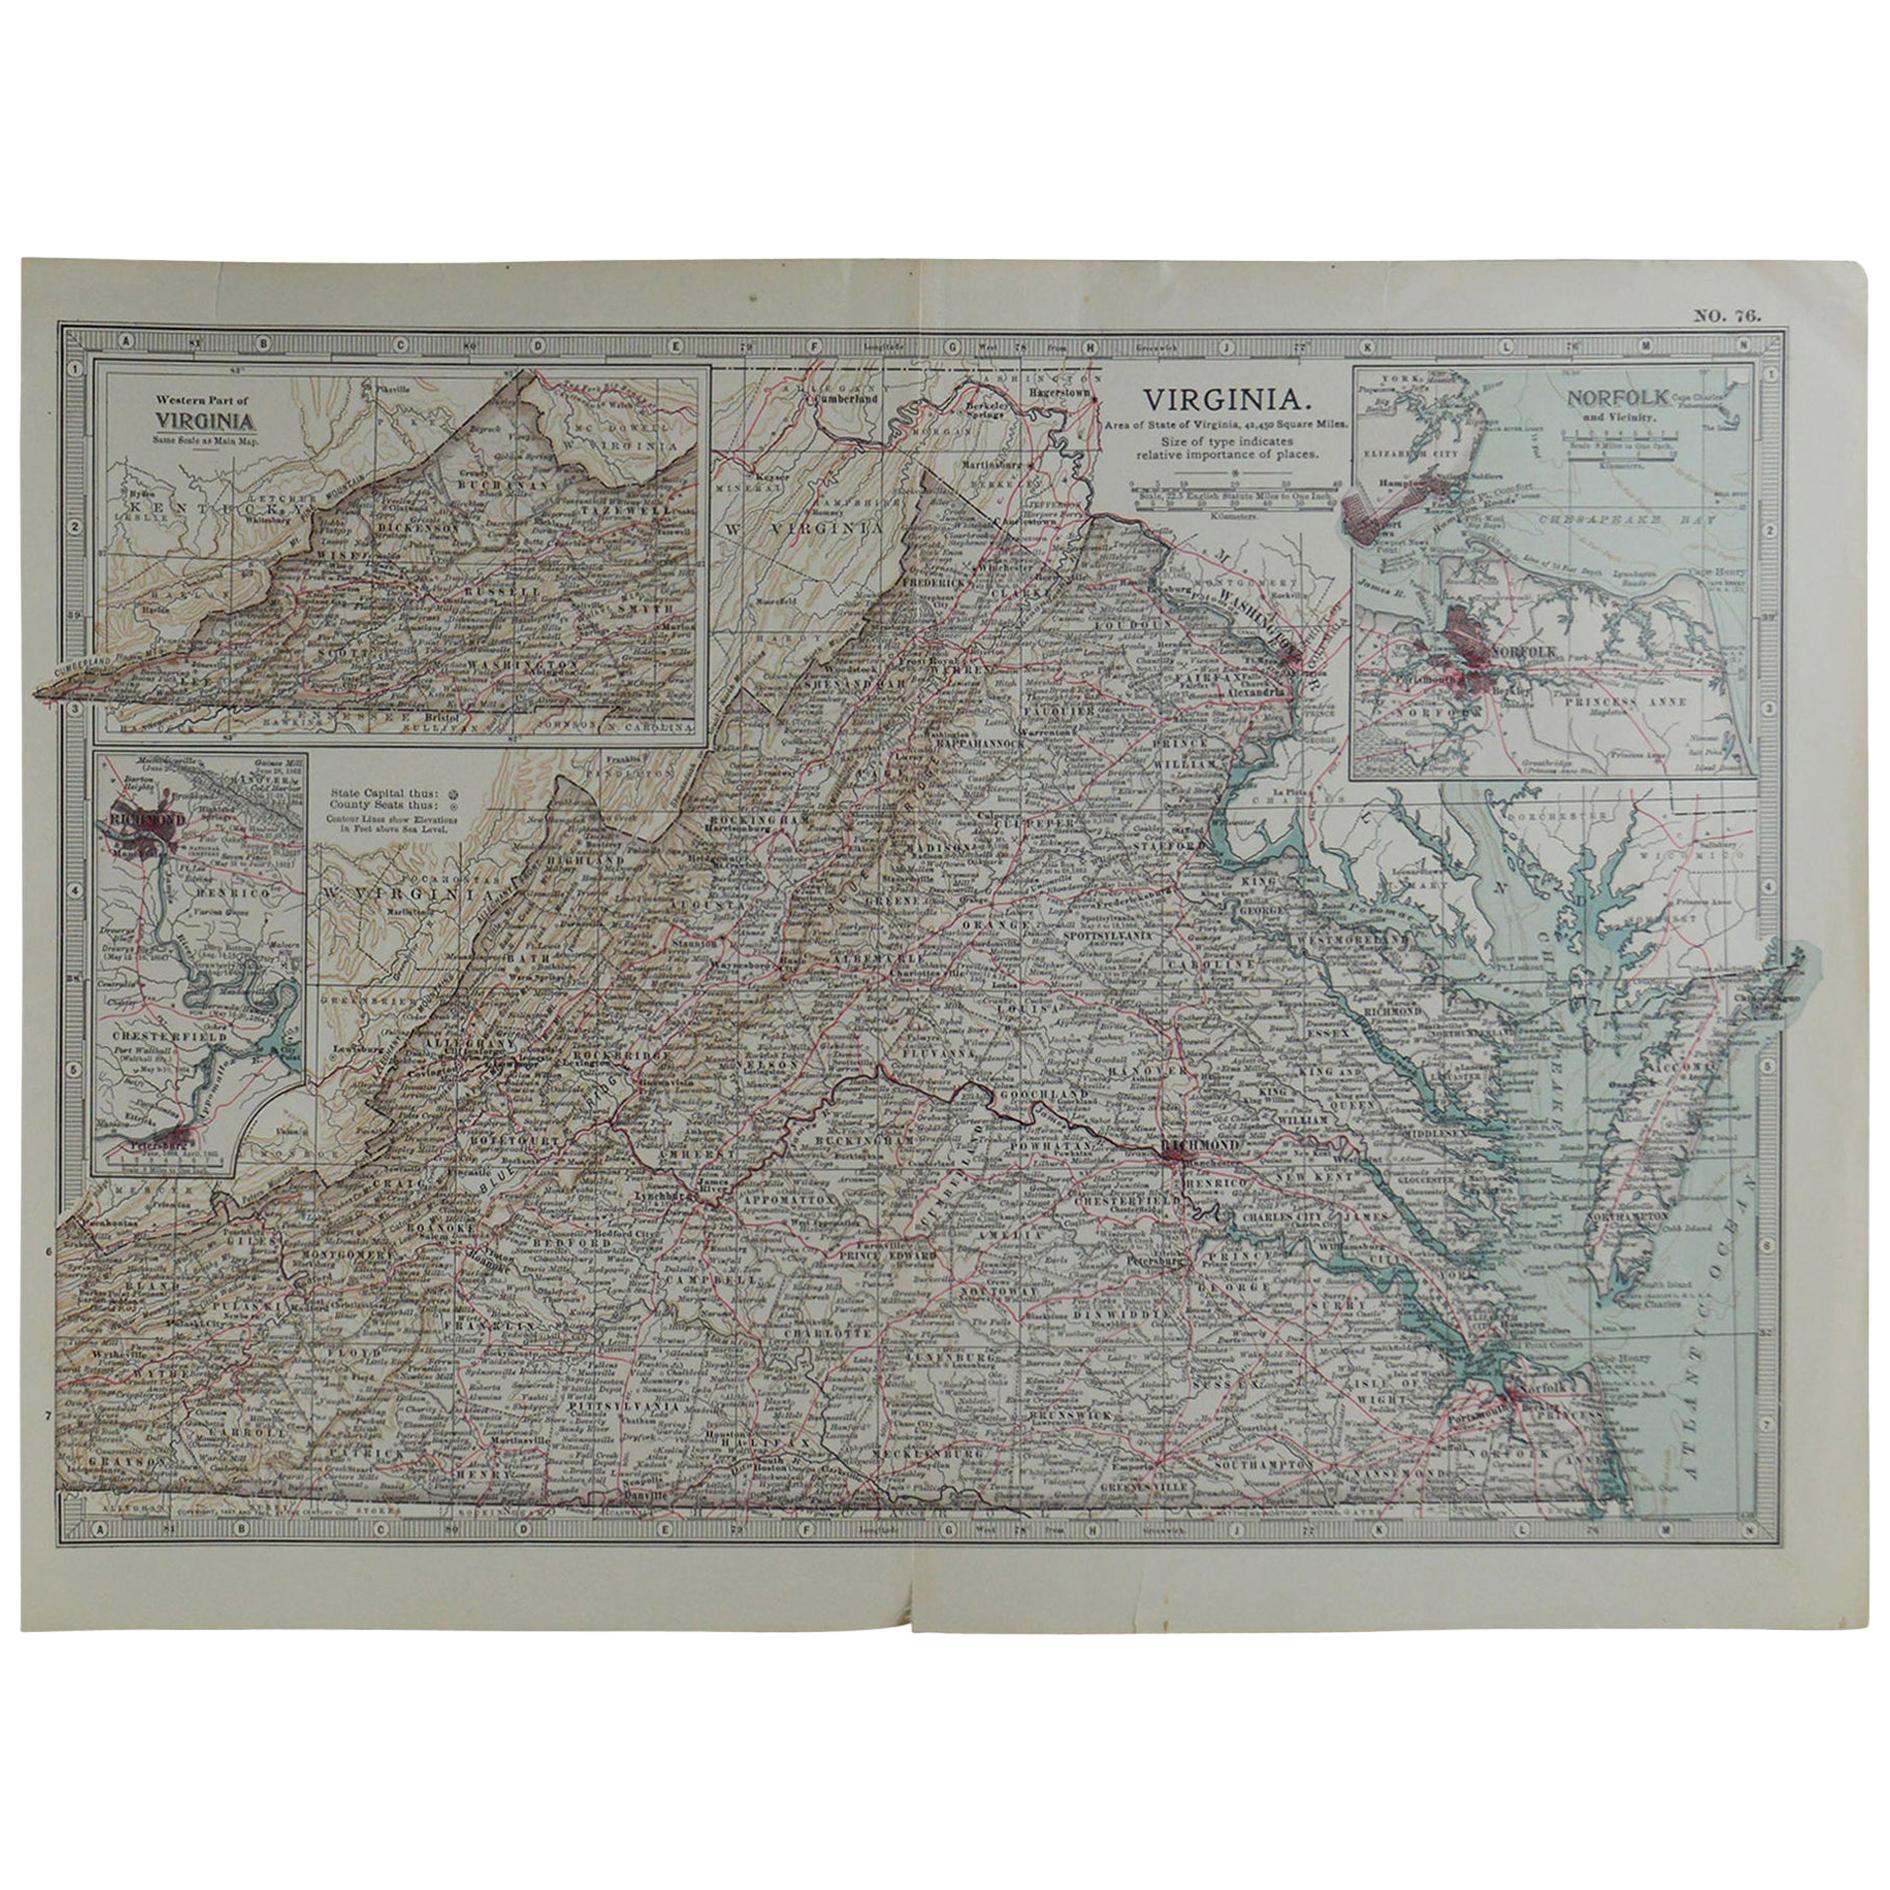 Original Antique Map of Virginia, circa 1890